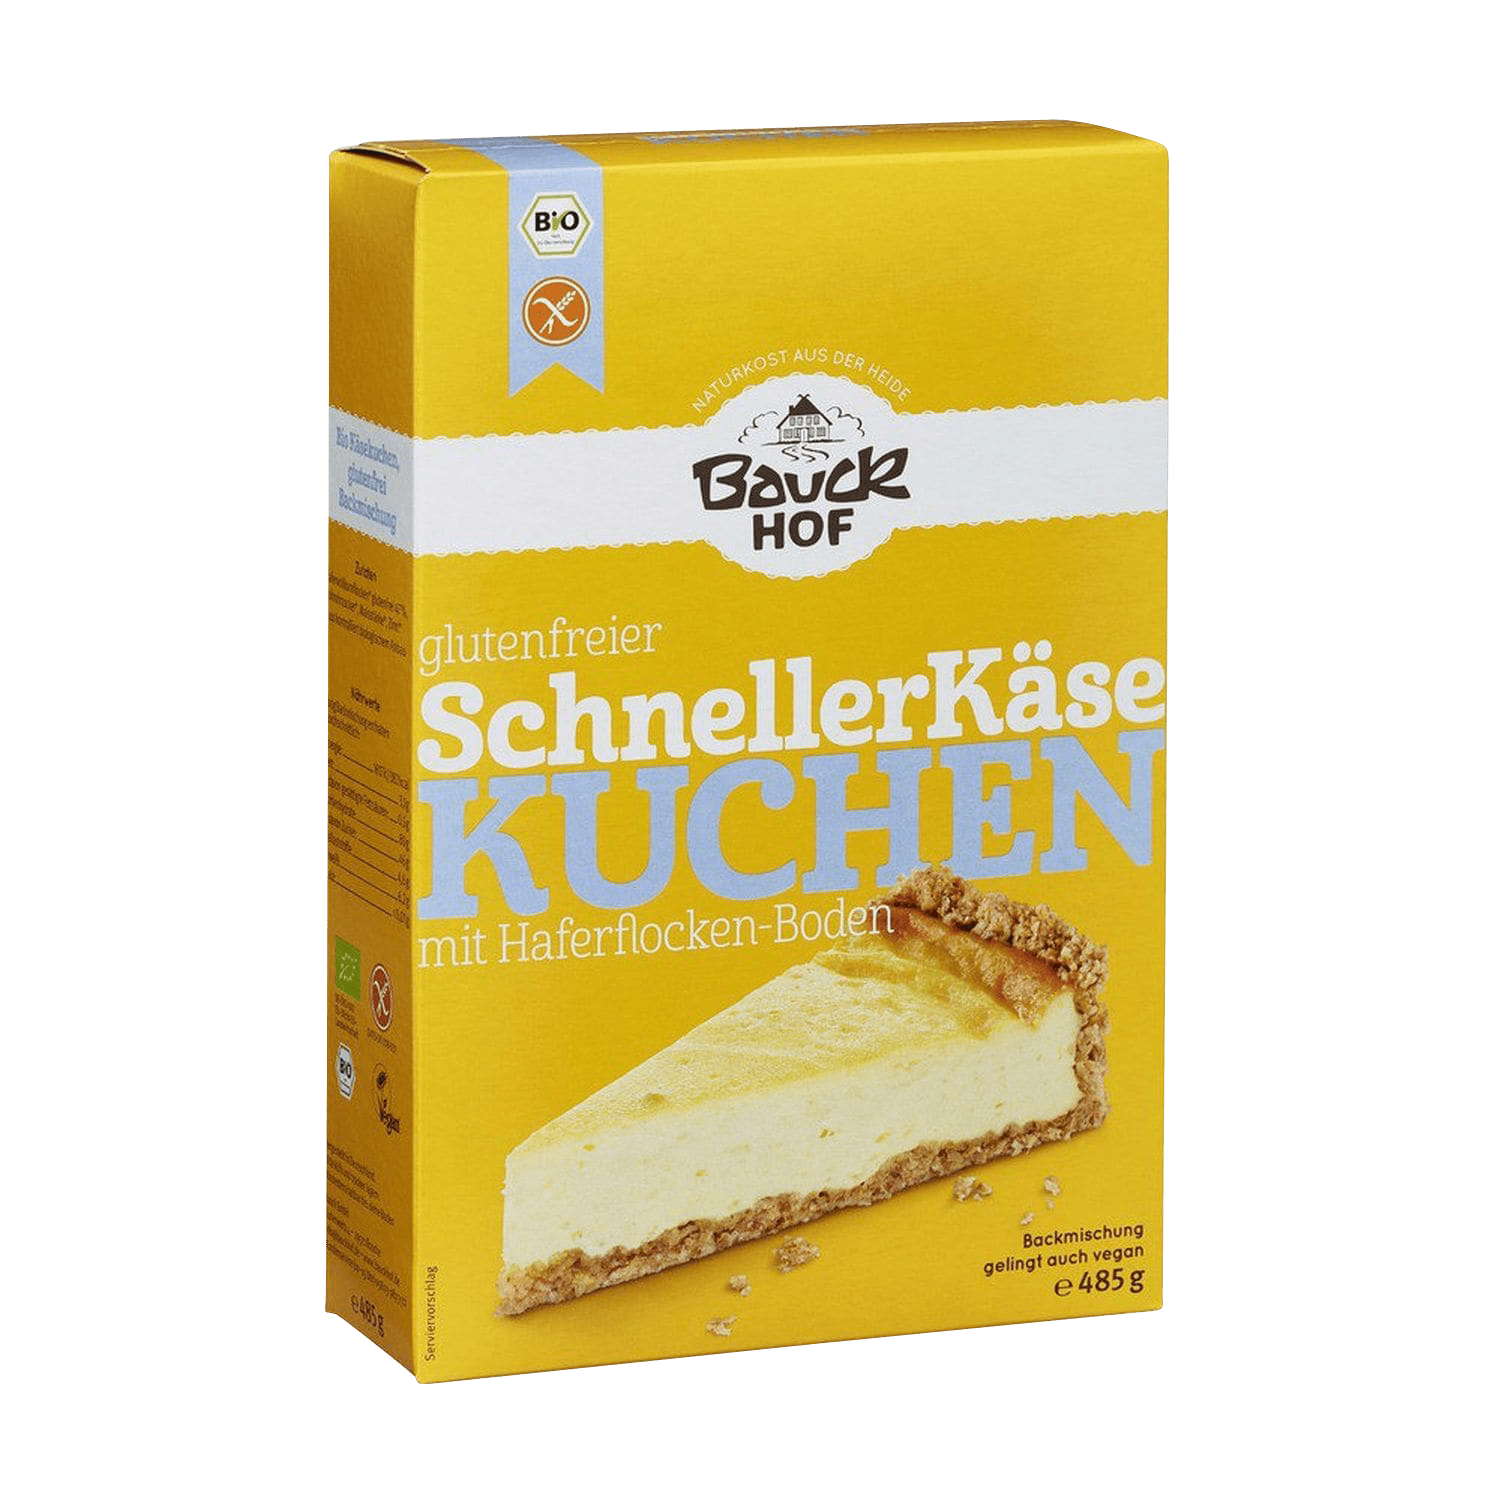 Schneller Käsekuchen glutenfrei, BIO, 485g